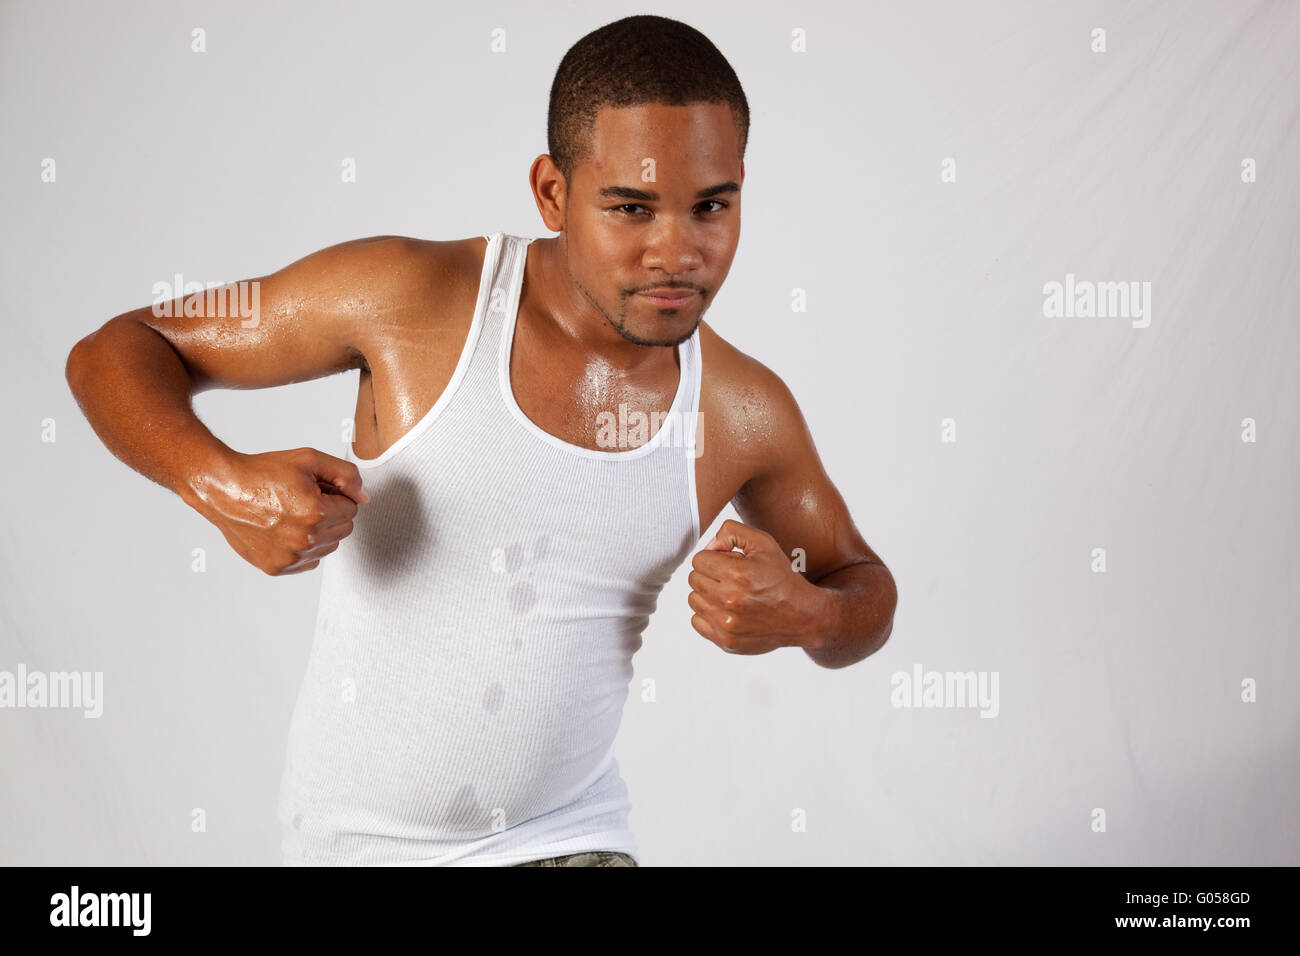 Apuesto joven negro flexionando sus músculos y buscando centrado Foto de stock